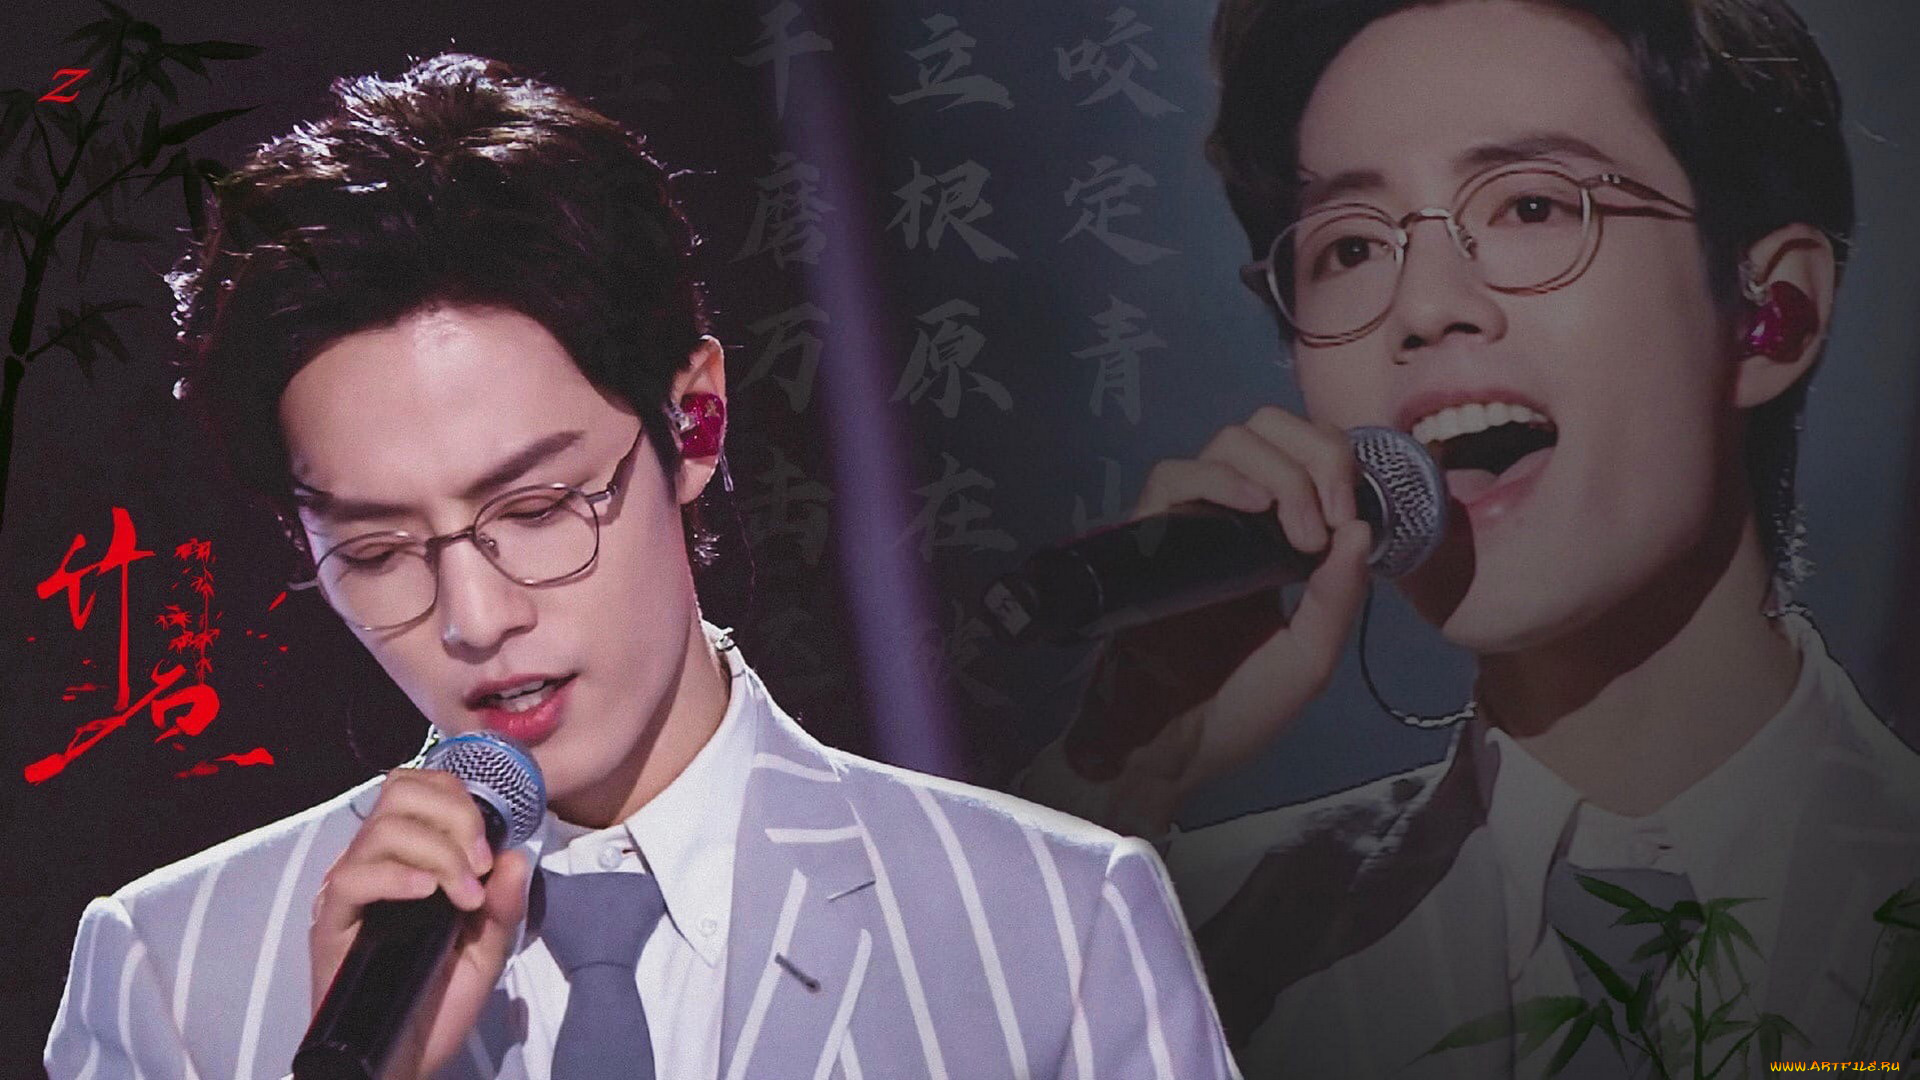 мужчины, xiao, zhan, актер, лицо, очки, микрофон, пиджак, песня